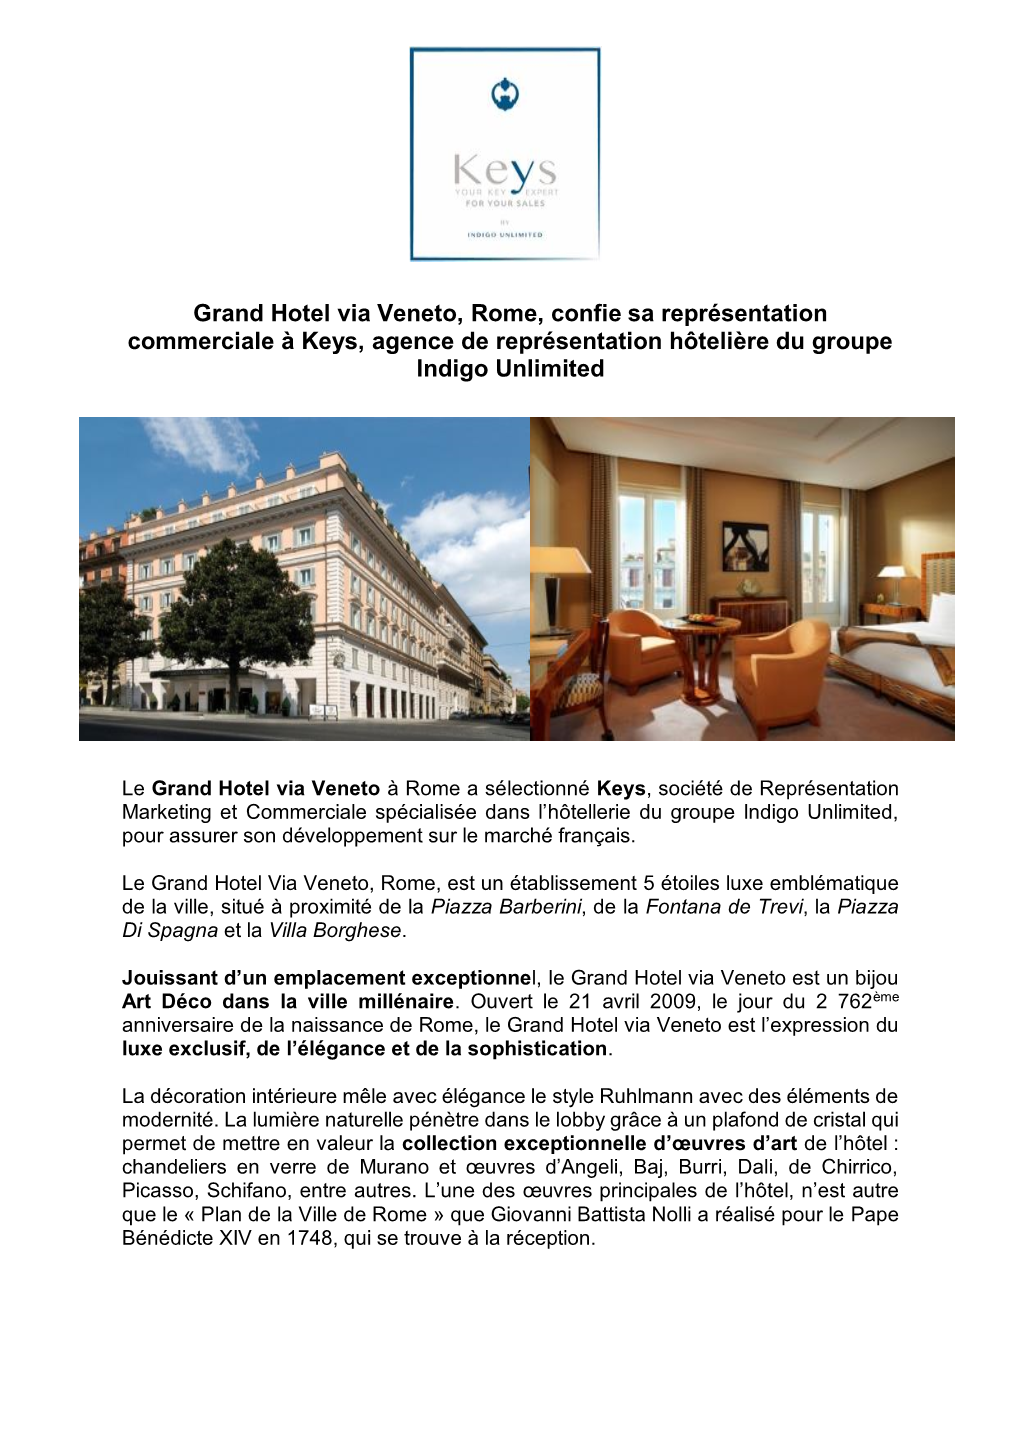 Grand Hotel Via Veneto, Rome, Confie Sa Représentation Commerciale À Keys, Agence De Représentation Hôtelière Du Groupe Indigo Unlimited